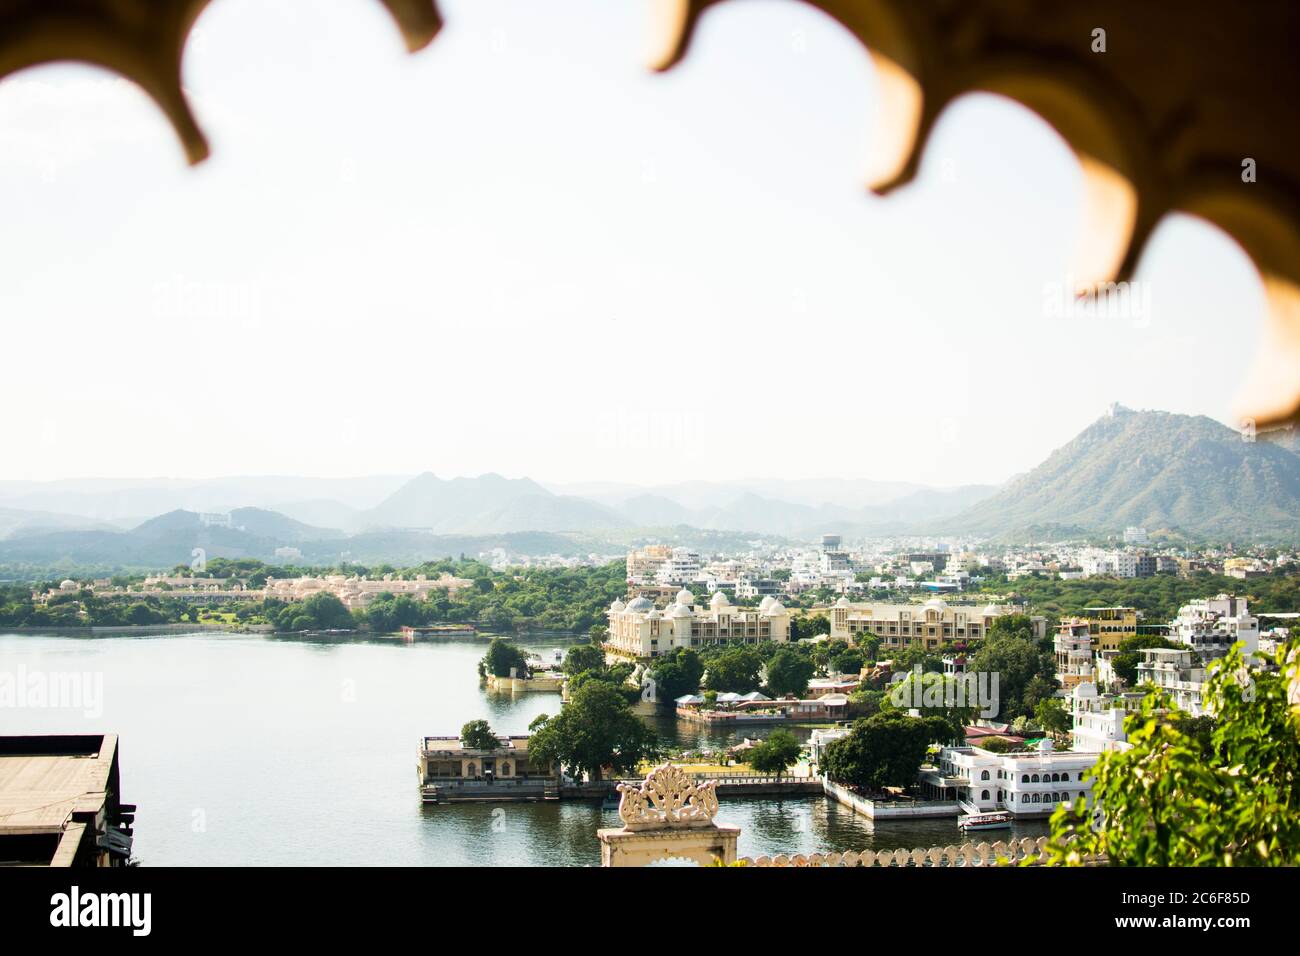 Le lac de Pichola est situé dans la ville d'Udaipur dans l'état indien du Rajasthan Banque D'Images